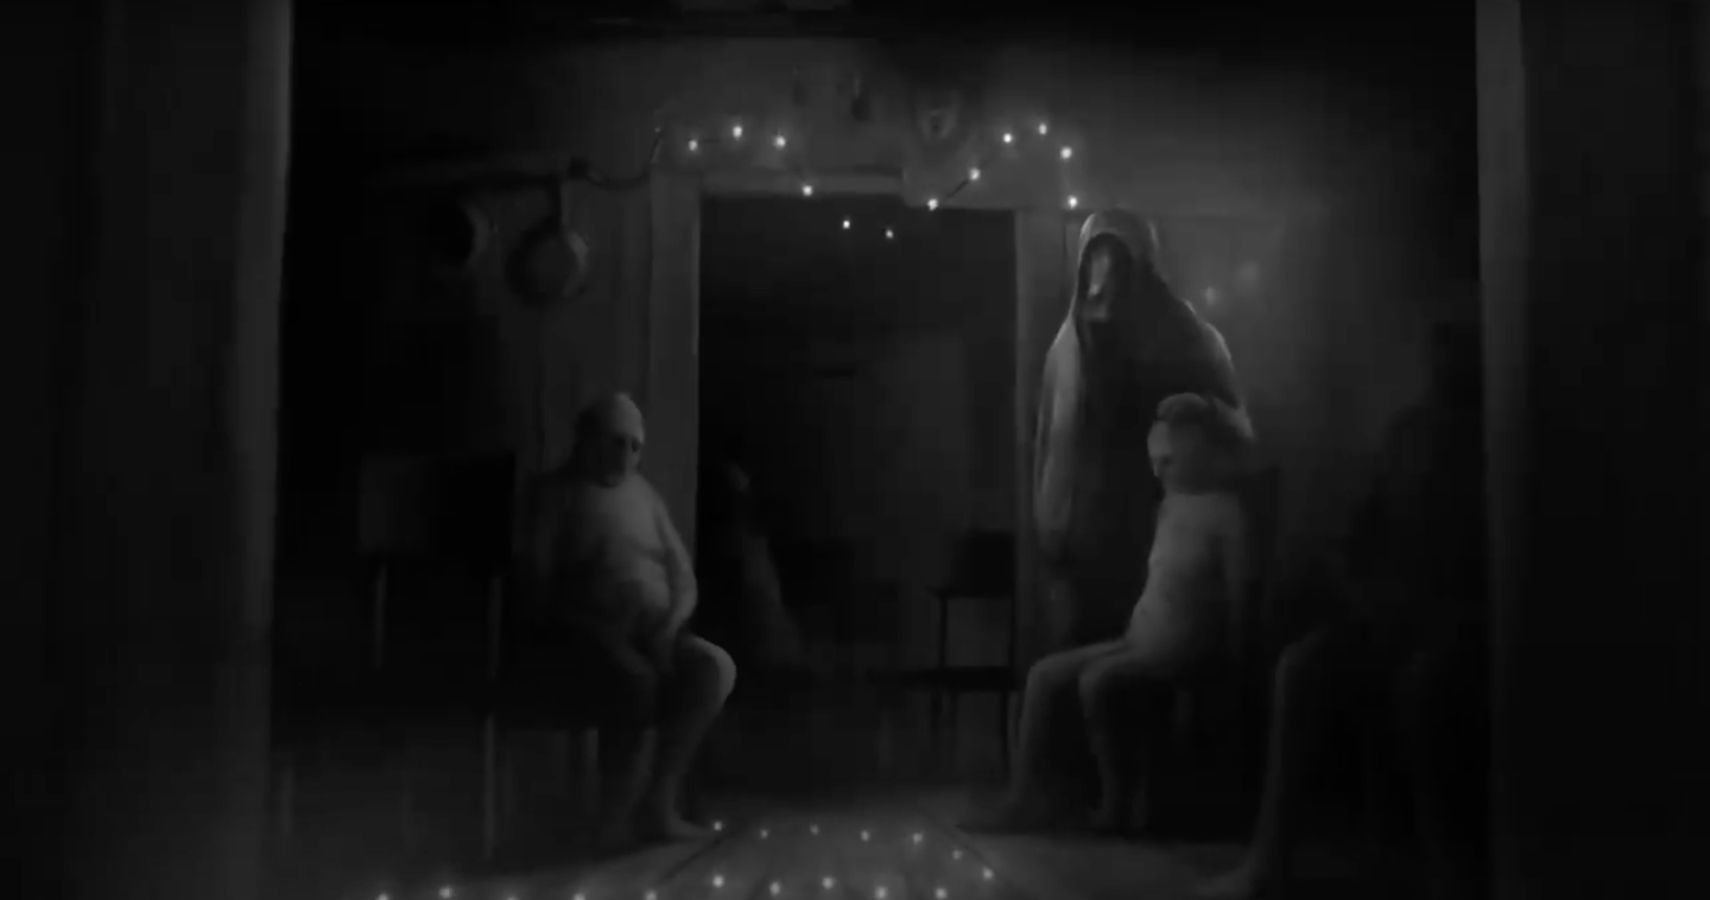 darkwood shadowed figures by a door